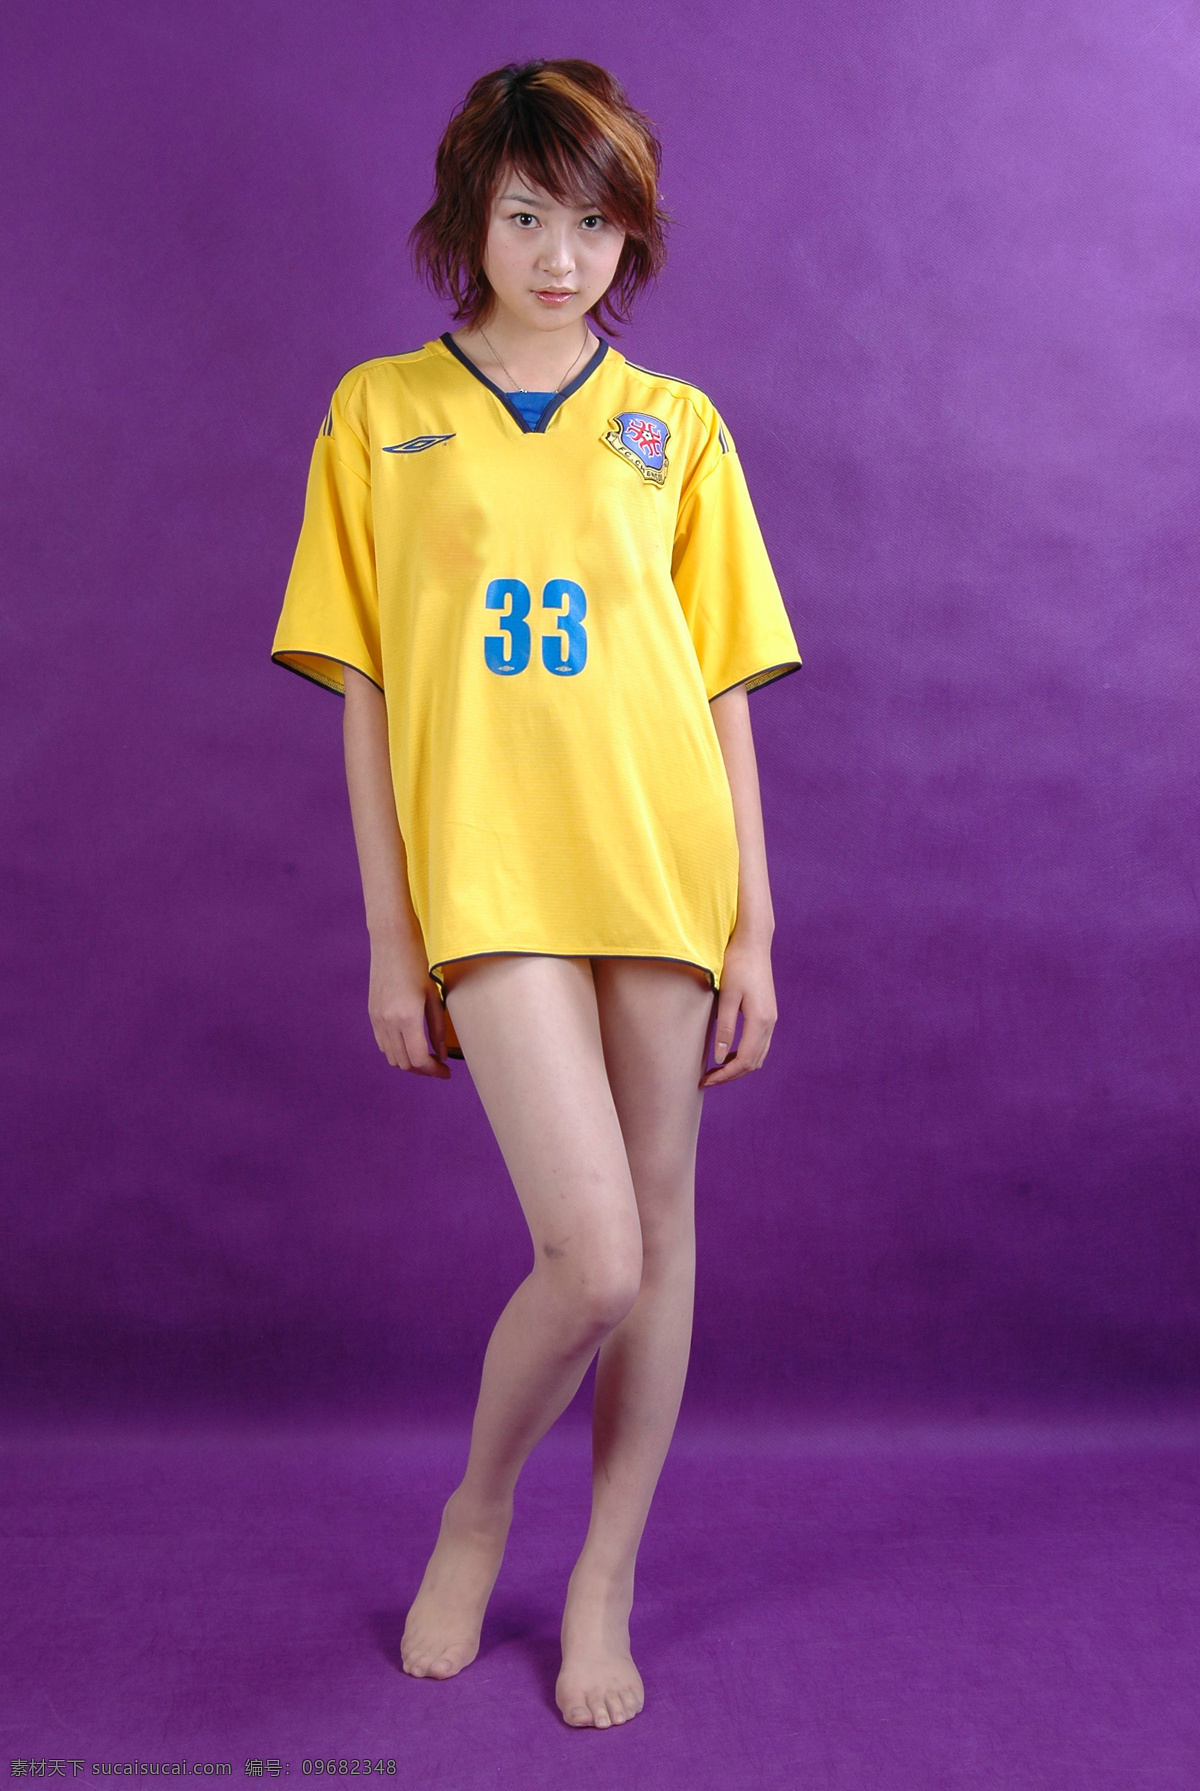 黄衣足球宝贝 气质美女 性感美女 足球宝贝 黄色队服 美腿 模特 美女 高清美女 女性女人 人物图库